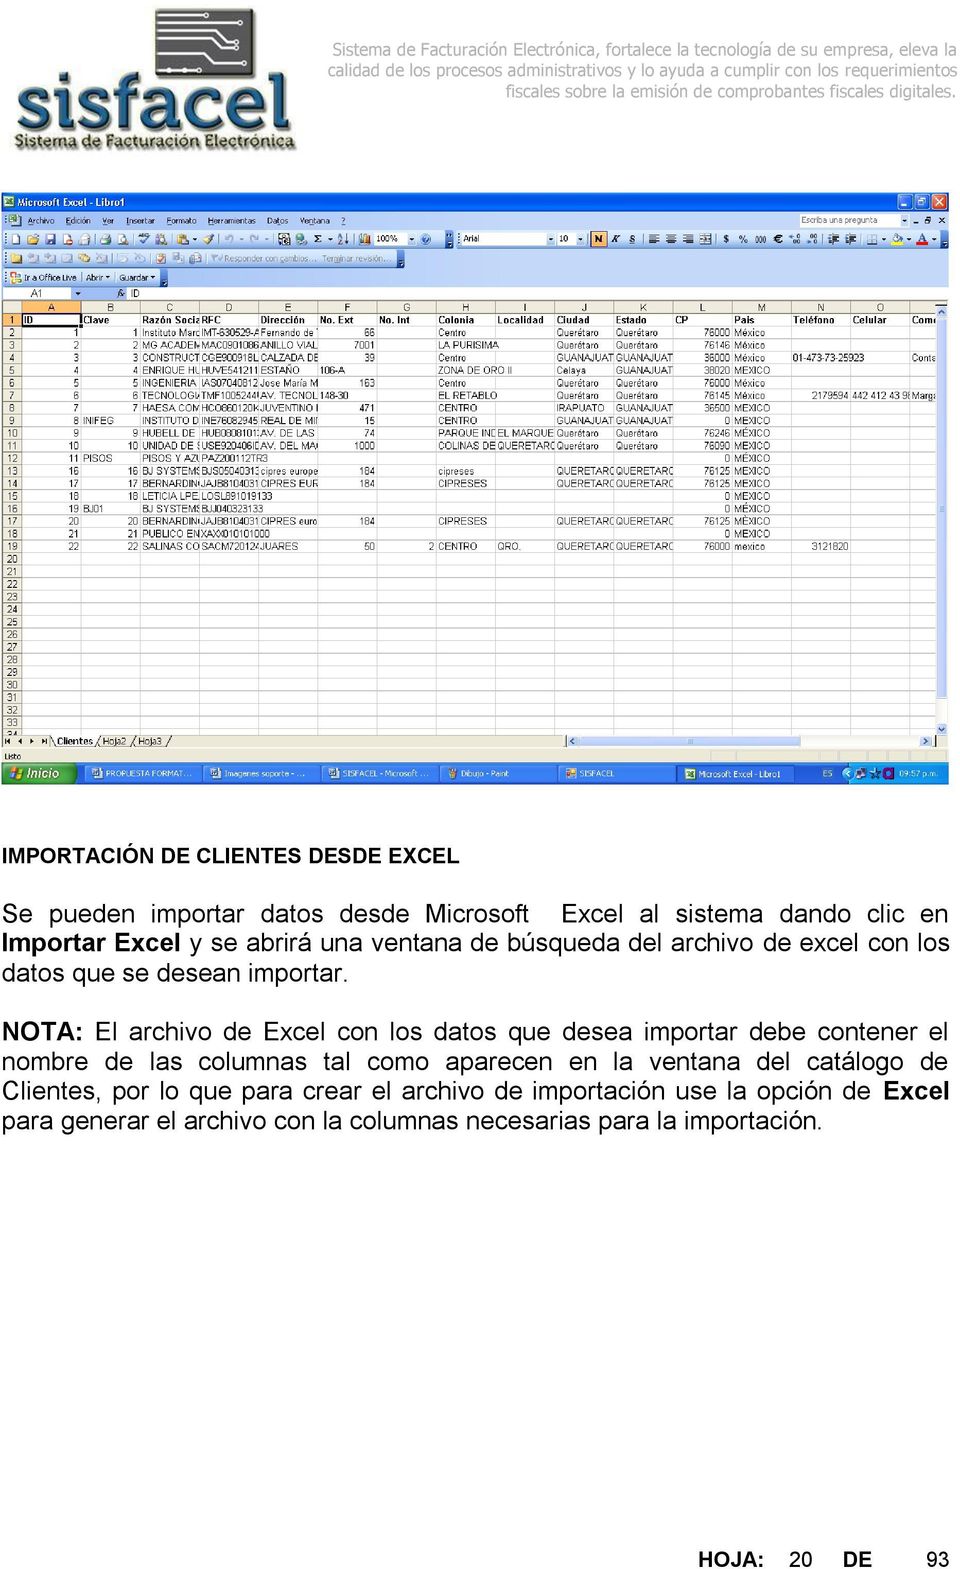 NOTA: El archivo de Excel con los datos que desea importar debe contener el nombre de las columnas tal como aparecen en la ventana